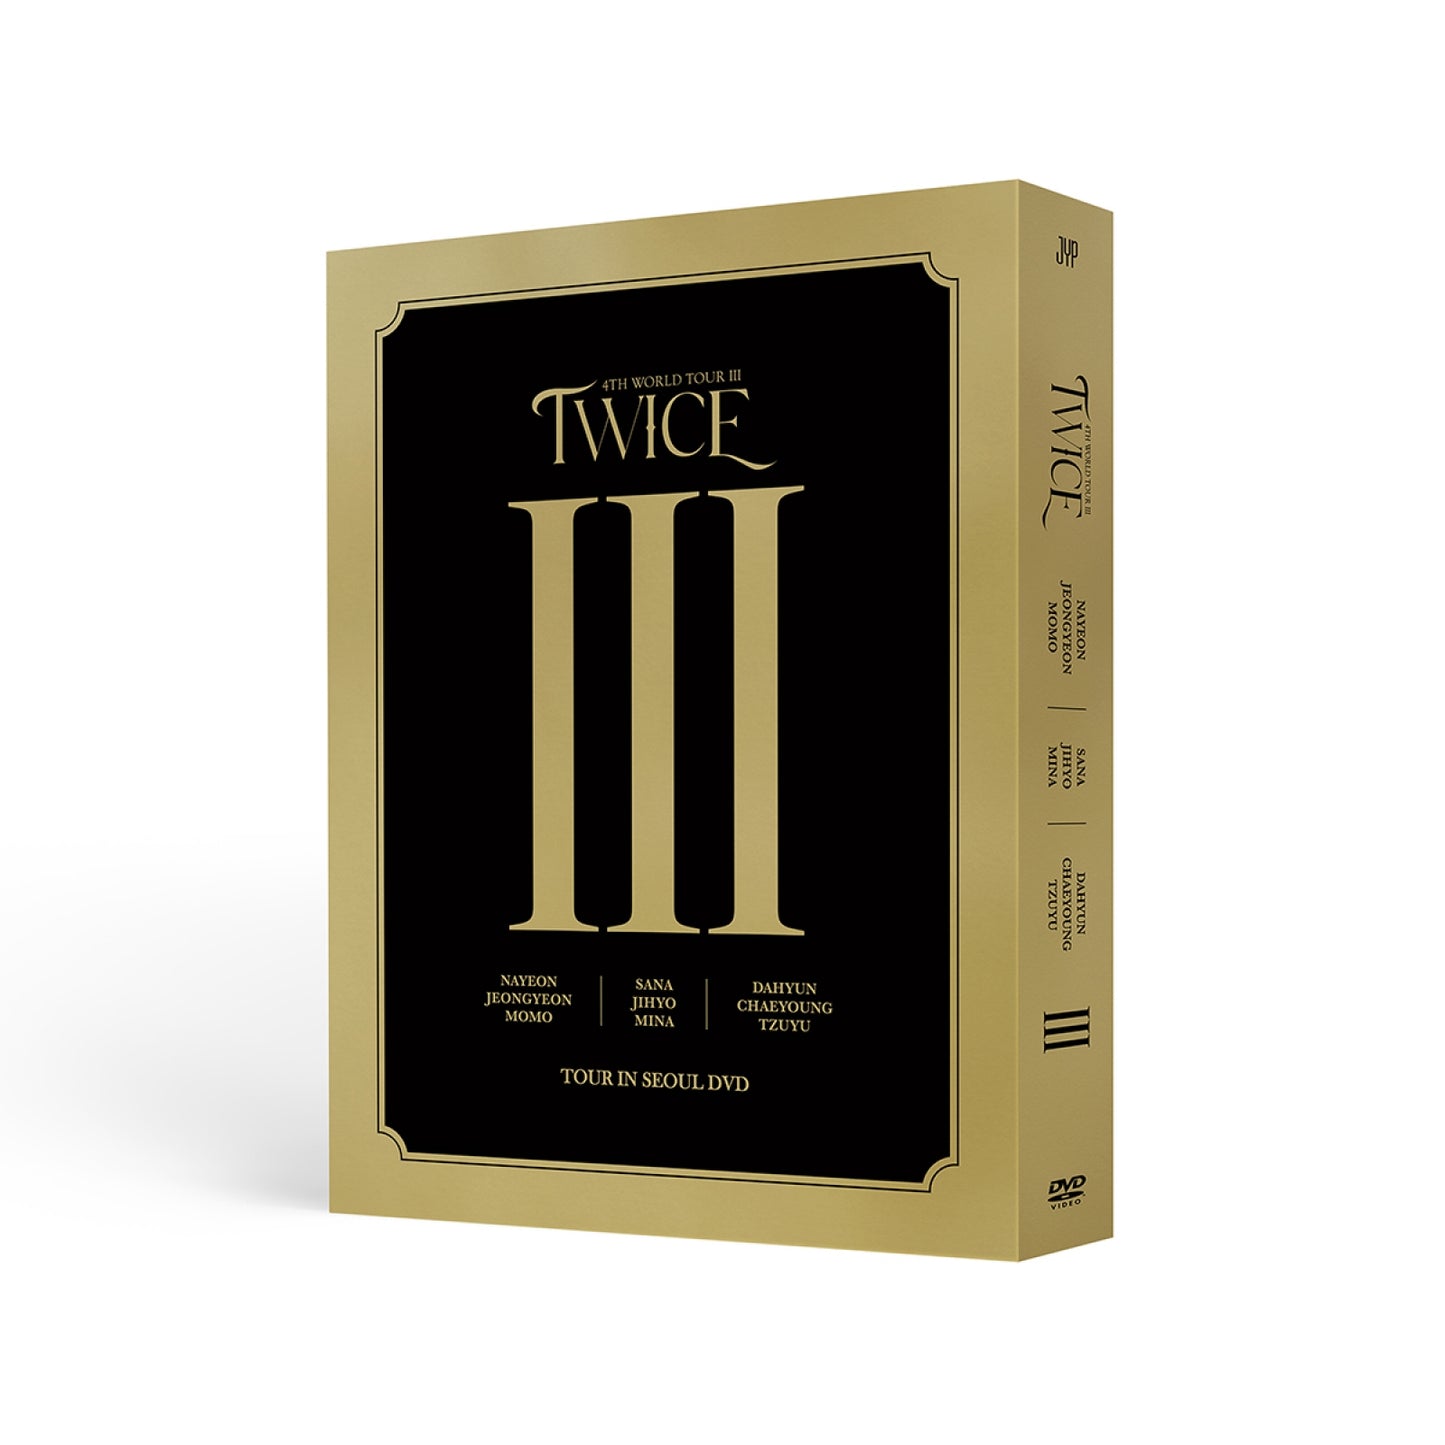 TWICE 4th World Tour III in Seoul DVD